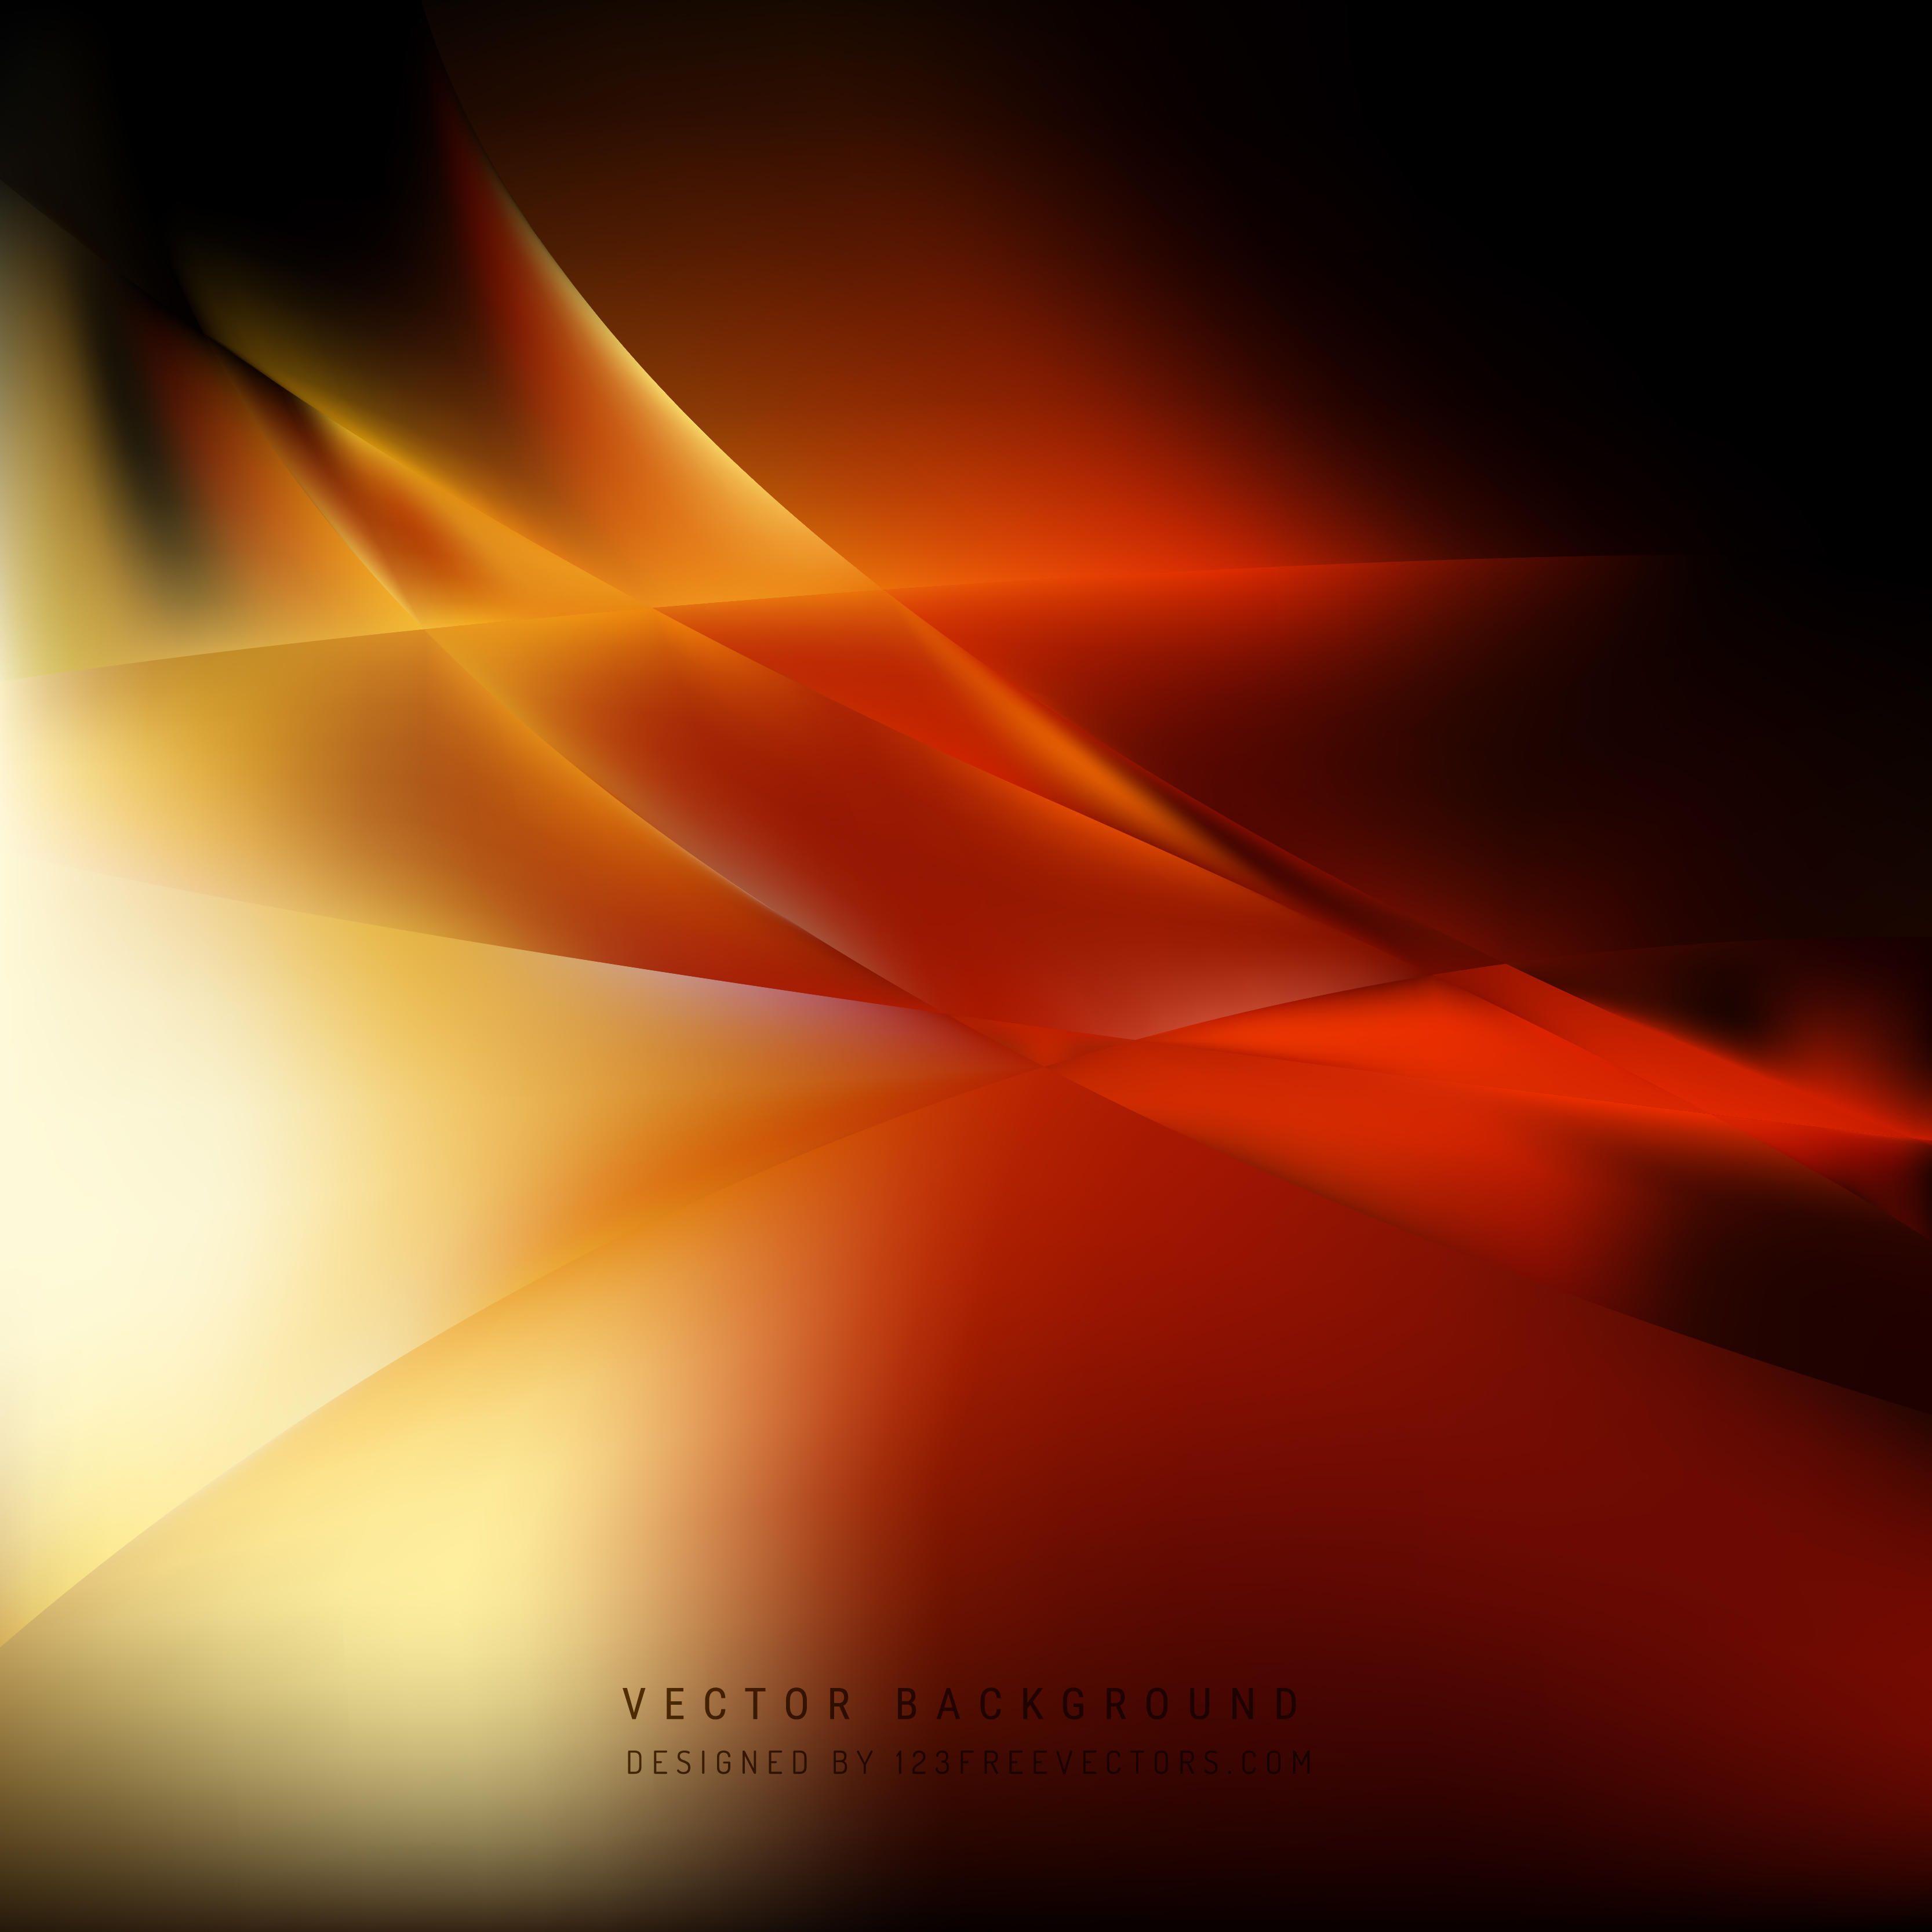 Cool Orange Background Vectors. Download Free Vector Art